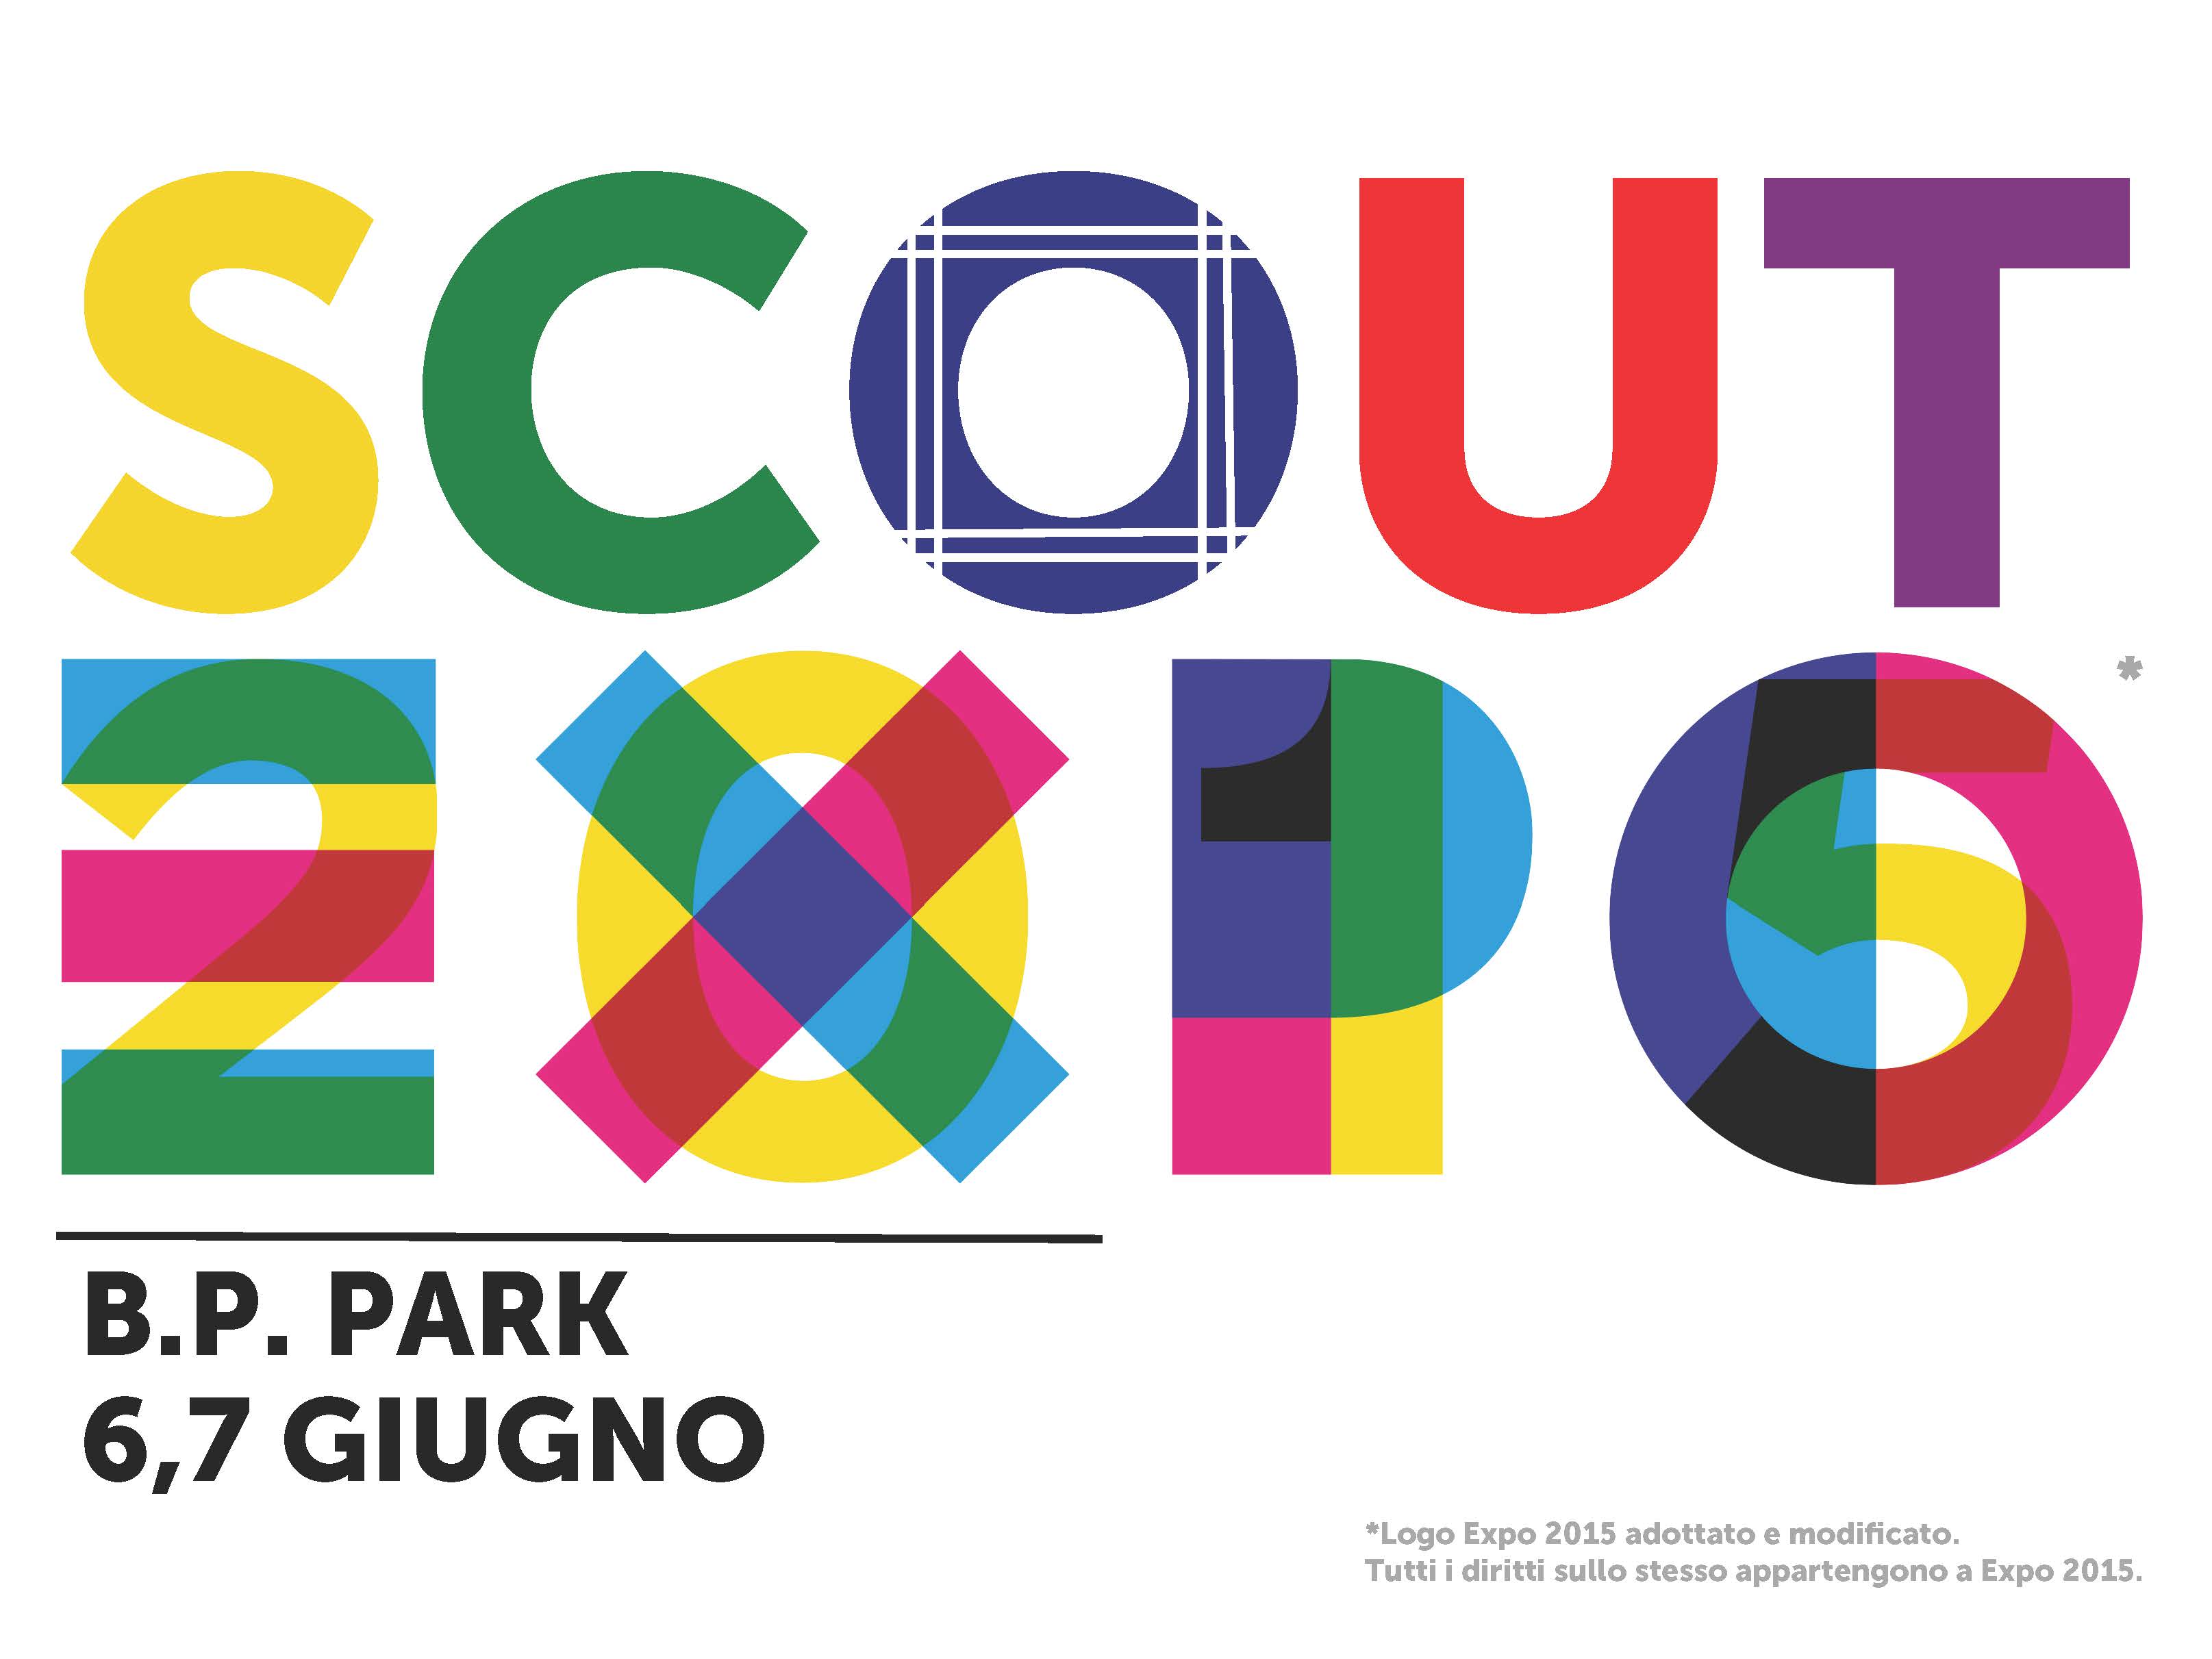 Scout Expo! 6,7 Giugno